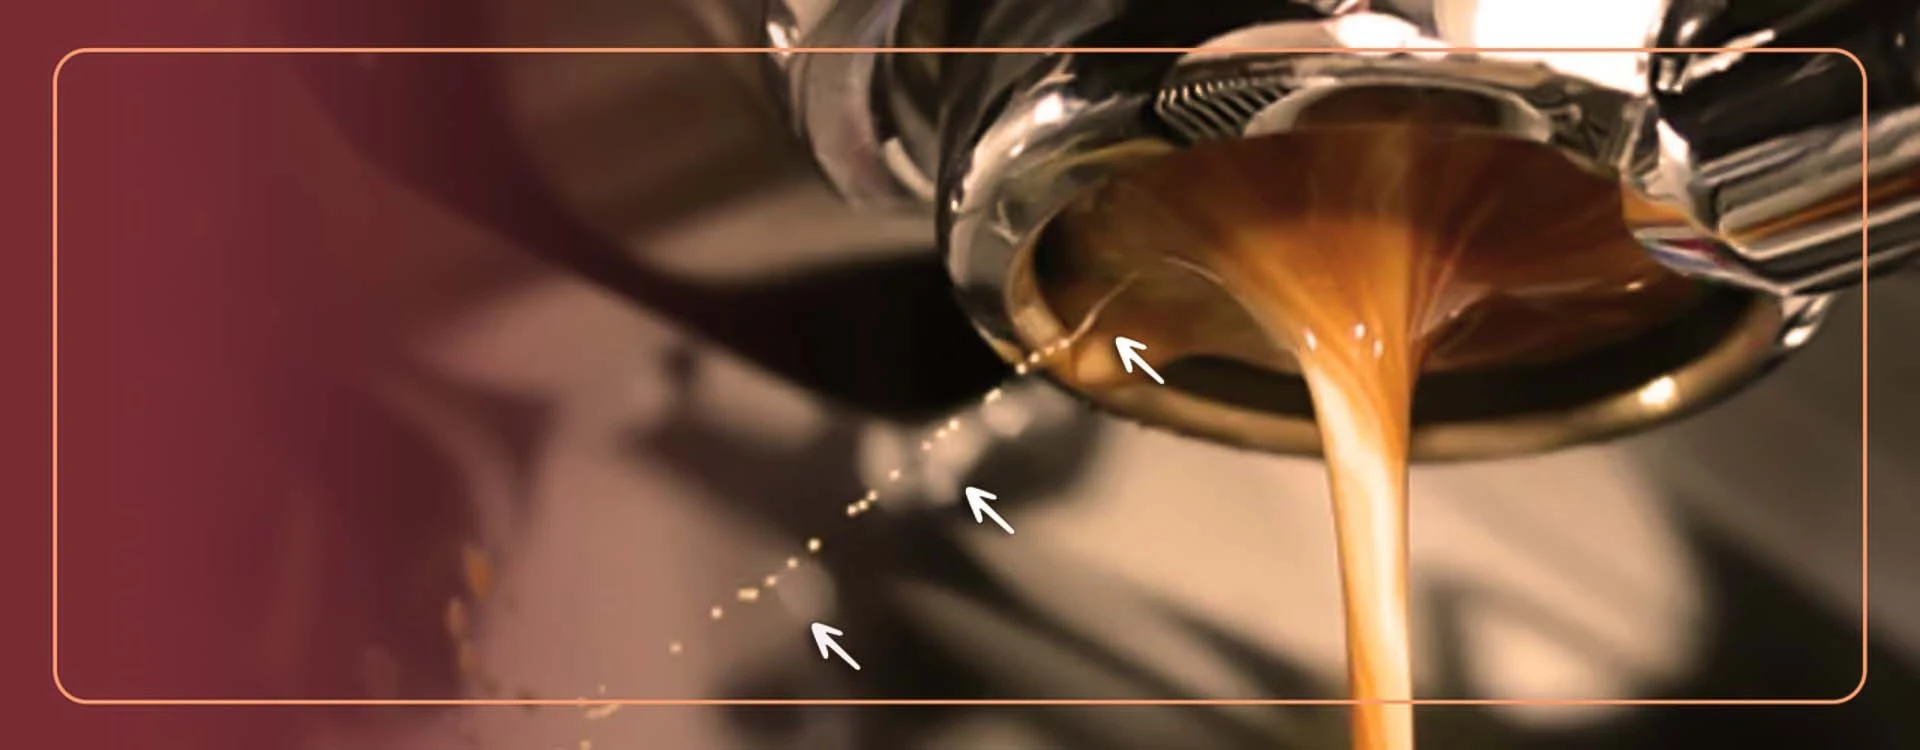 5 Astuces pour faire du café sans filtre